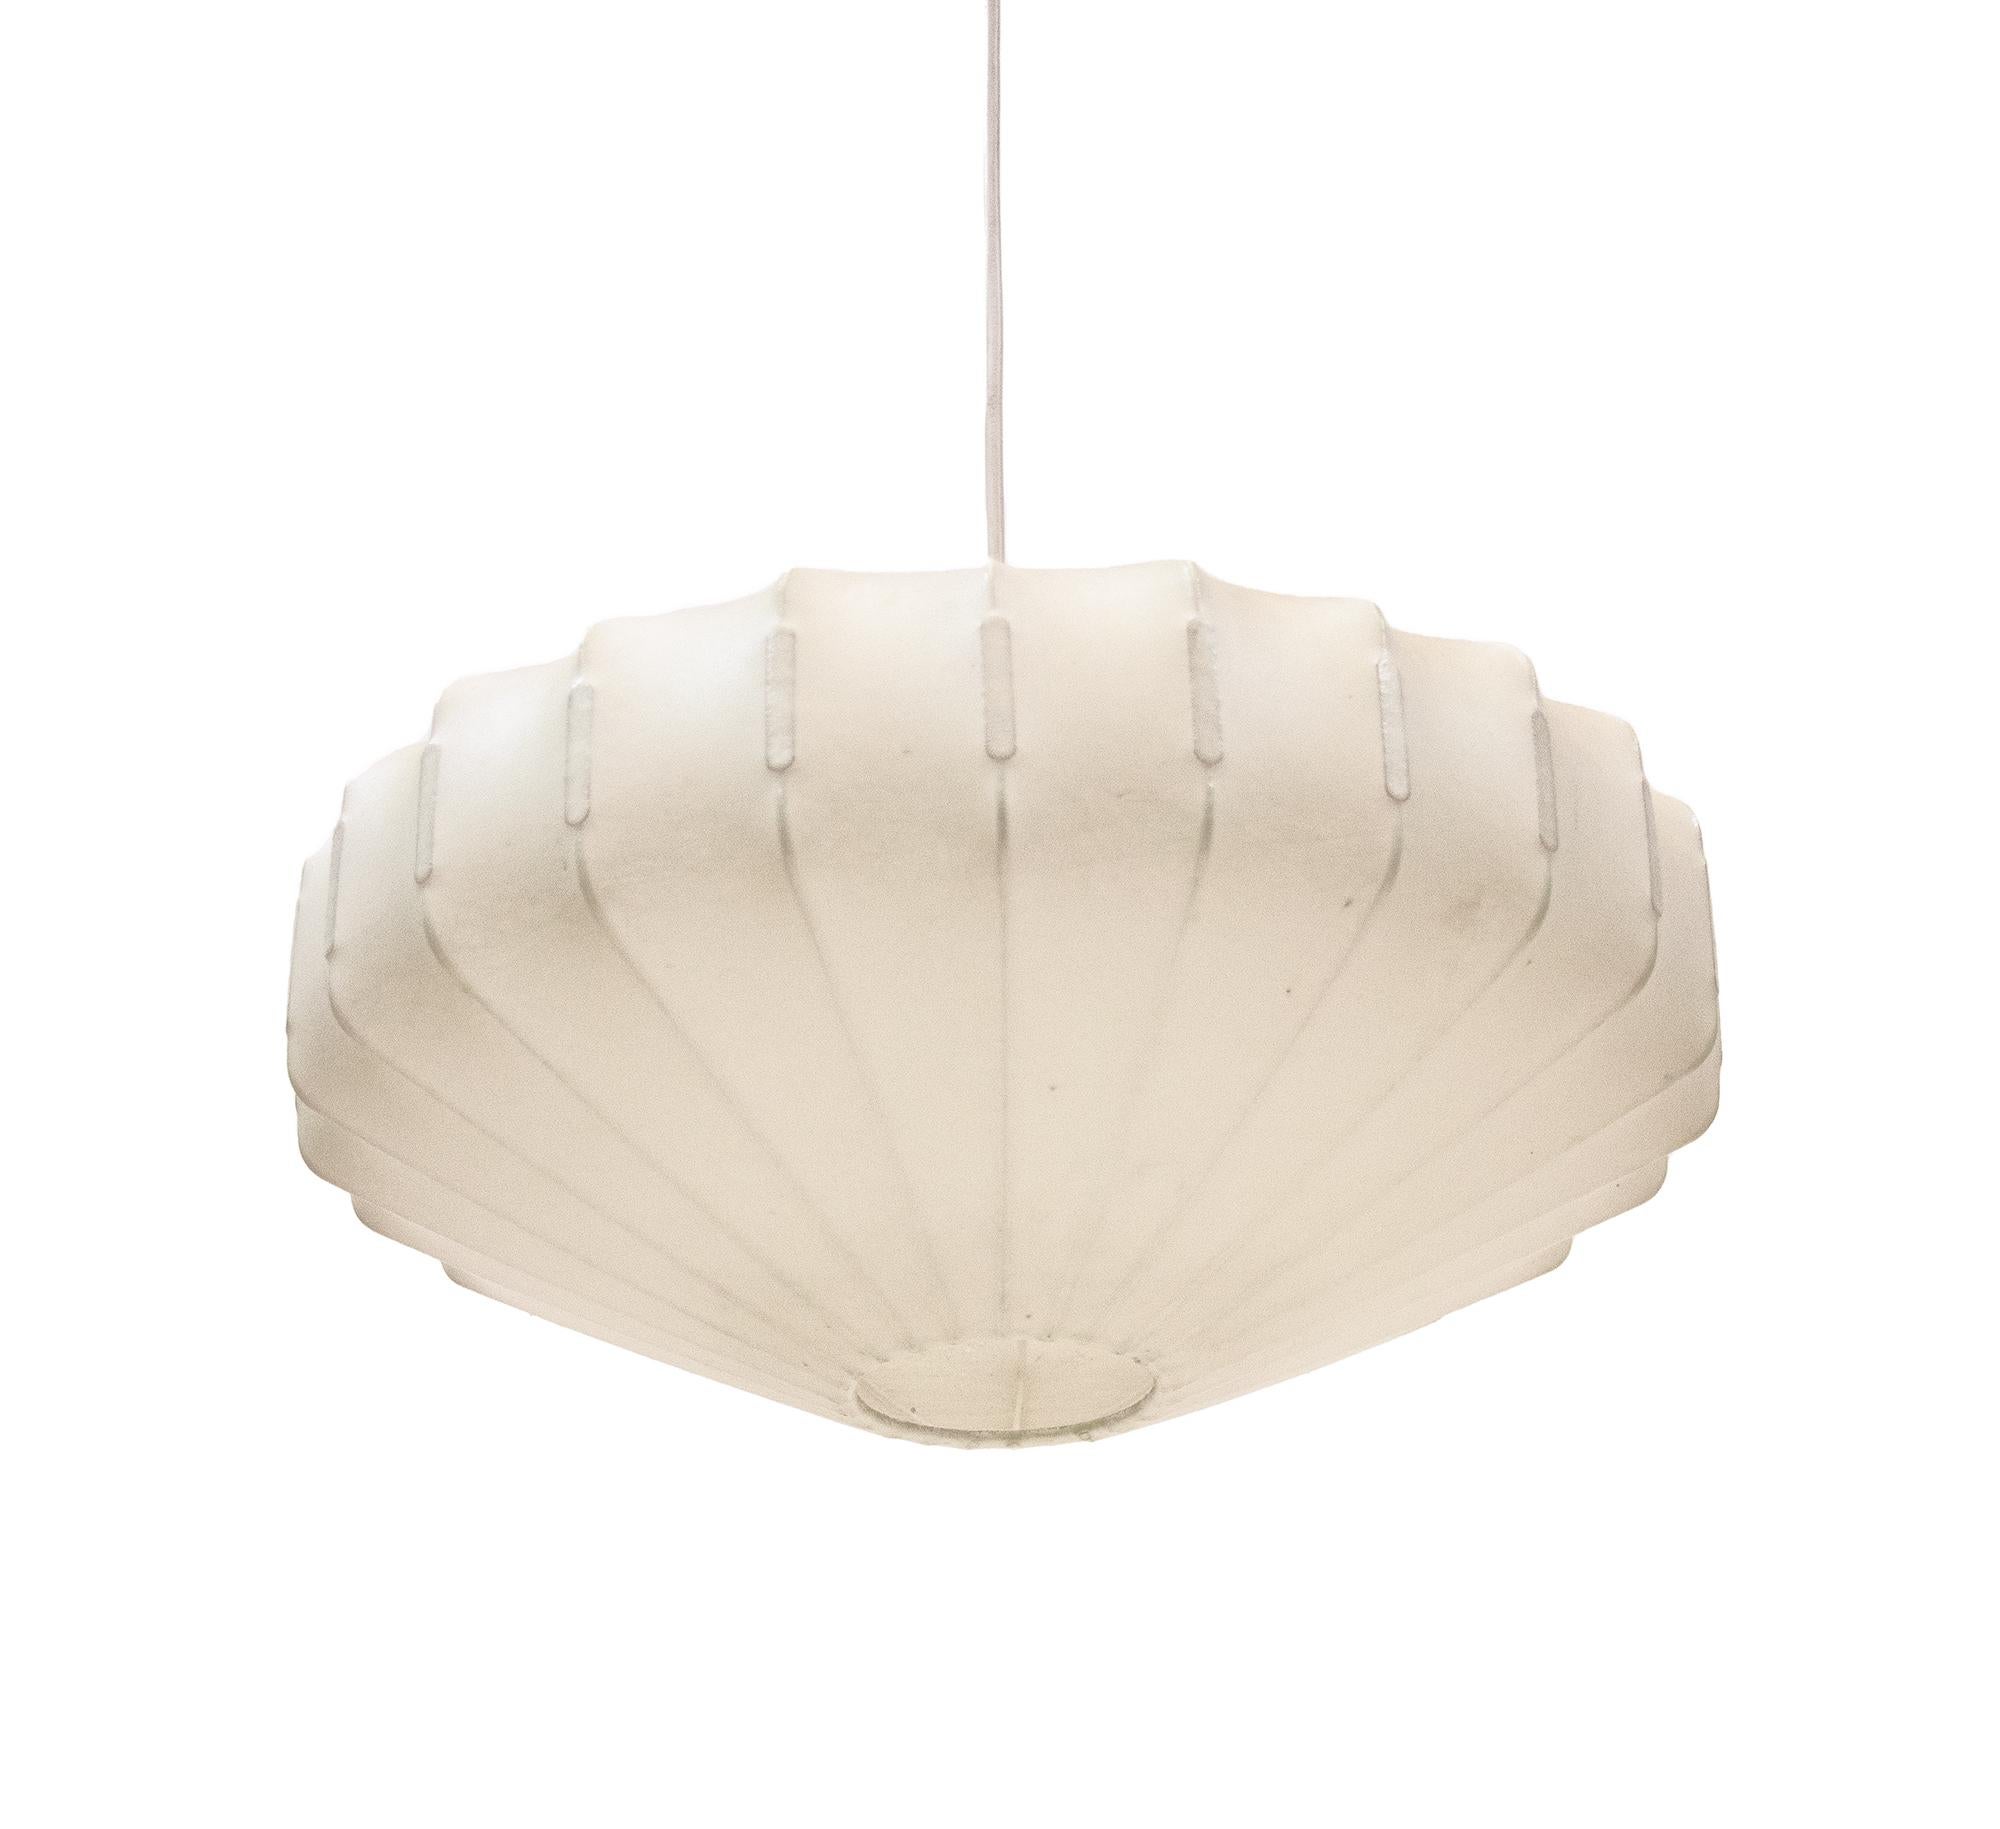 Lampe cocon en forme de losange conçue par Friedel Wauer pour Goldkant Leuchten, Allemagne. La lampe est fabriquée à partir d'un polymère unique pulvérisé sur un cadre métallique, pour donner un effet de cocon. 

Dimensions : diamètre 15.75